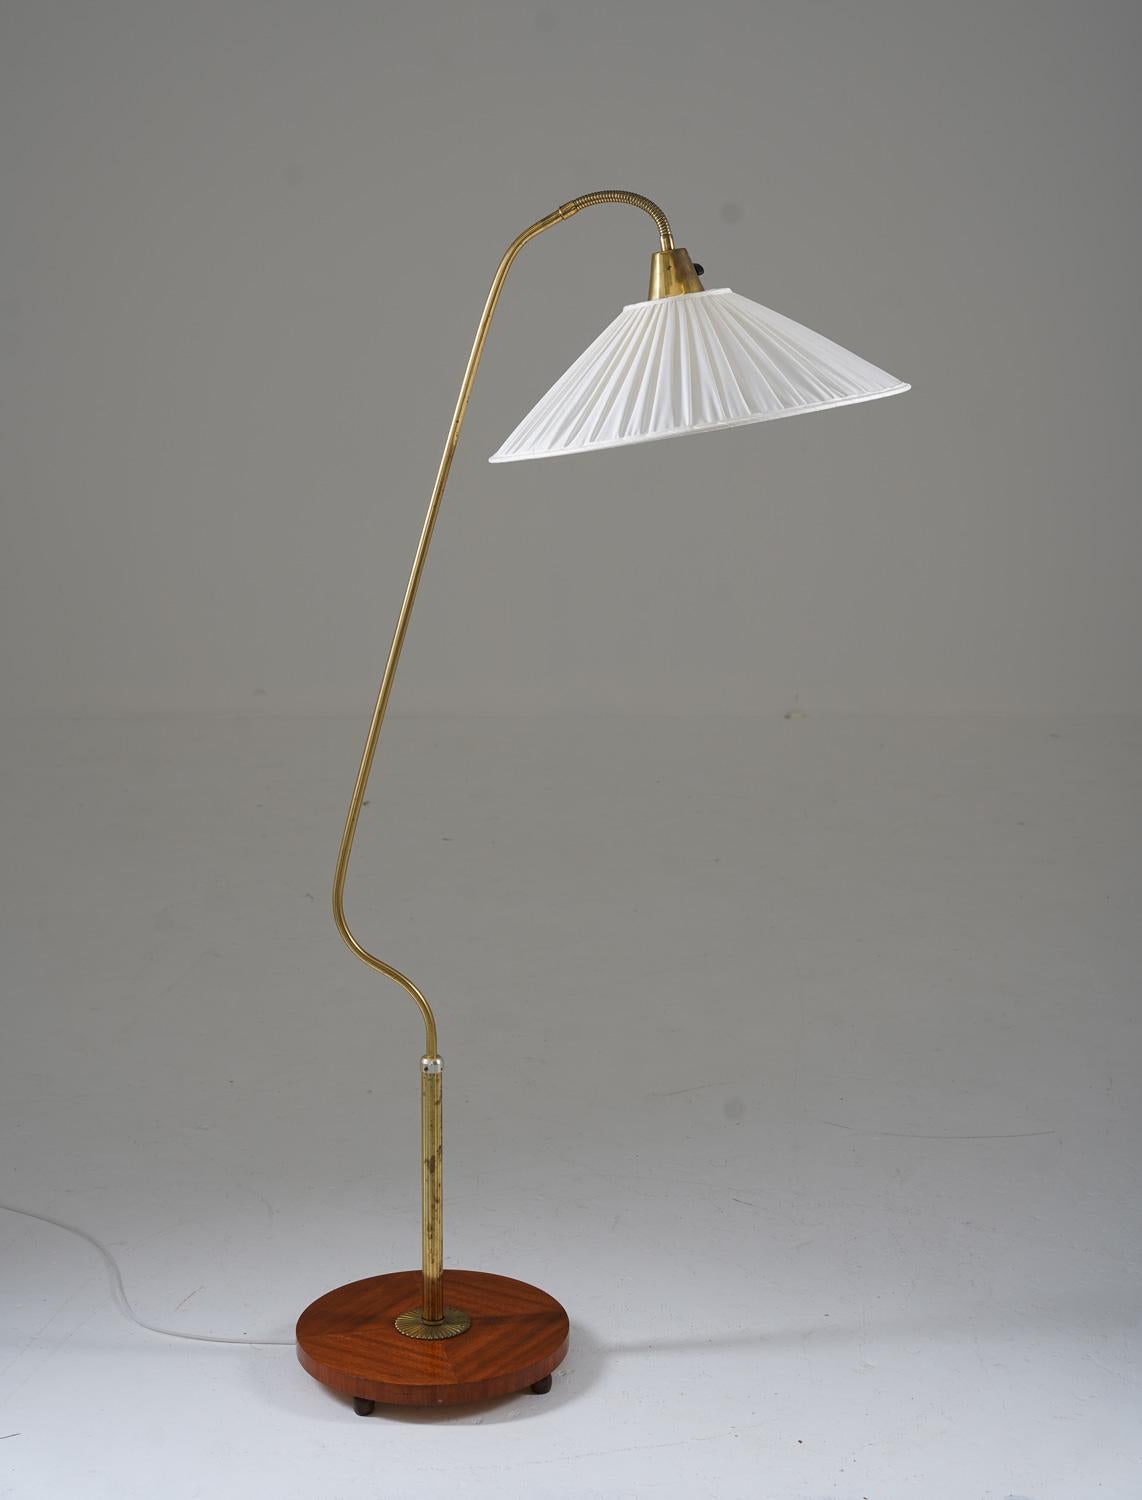 Dies ist eine schöne schwedische moderne Stehlampe, die in den 1940er Jahren in Schweden hergestellt wurde. Die Lampe verfügt über einen Holzsockel und eine Messingstange, die einen verstellbaren Fedderarm trägt, der den Schirm hält.